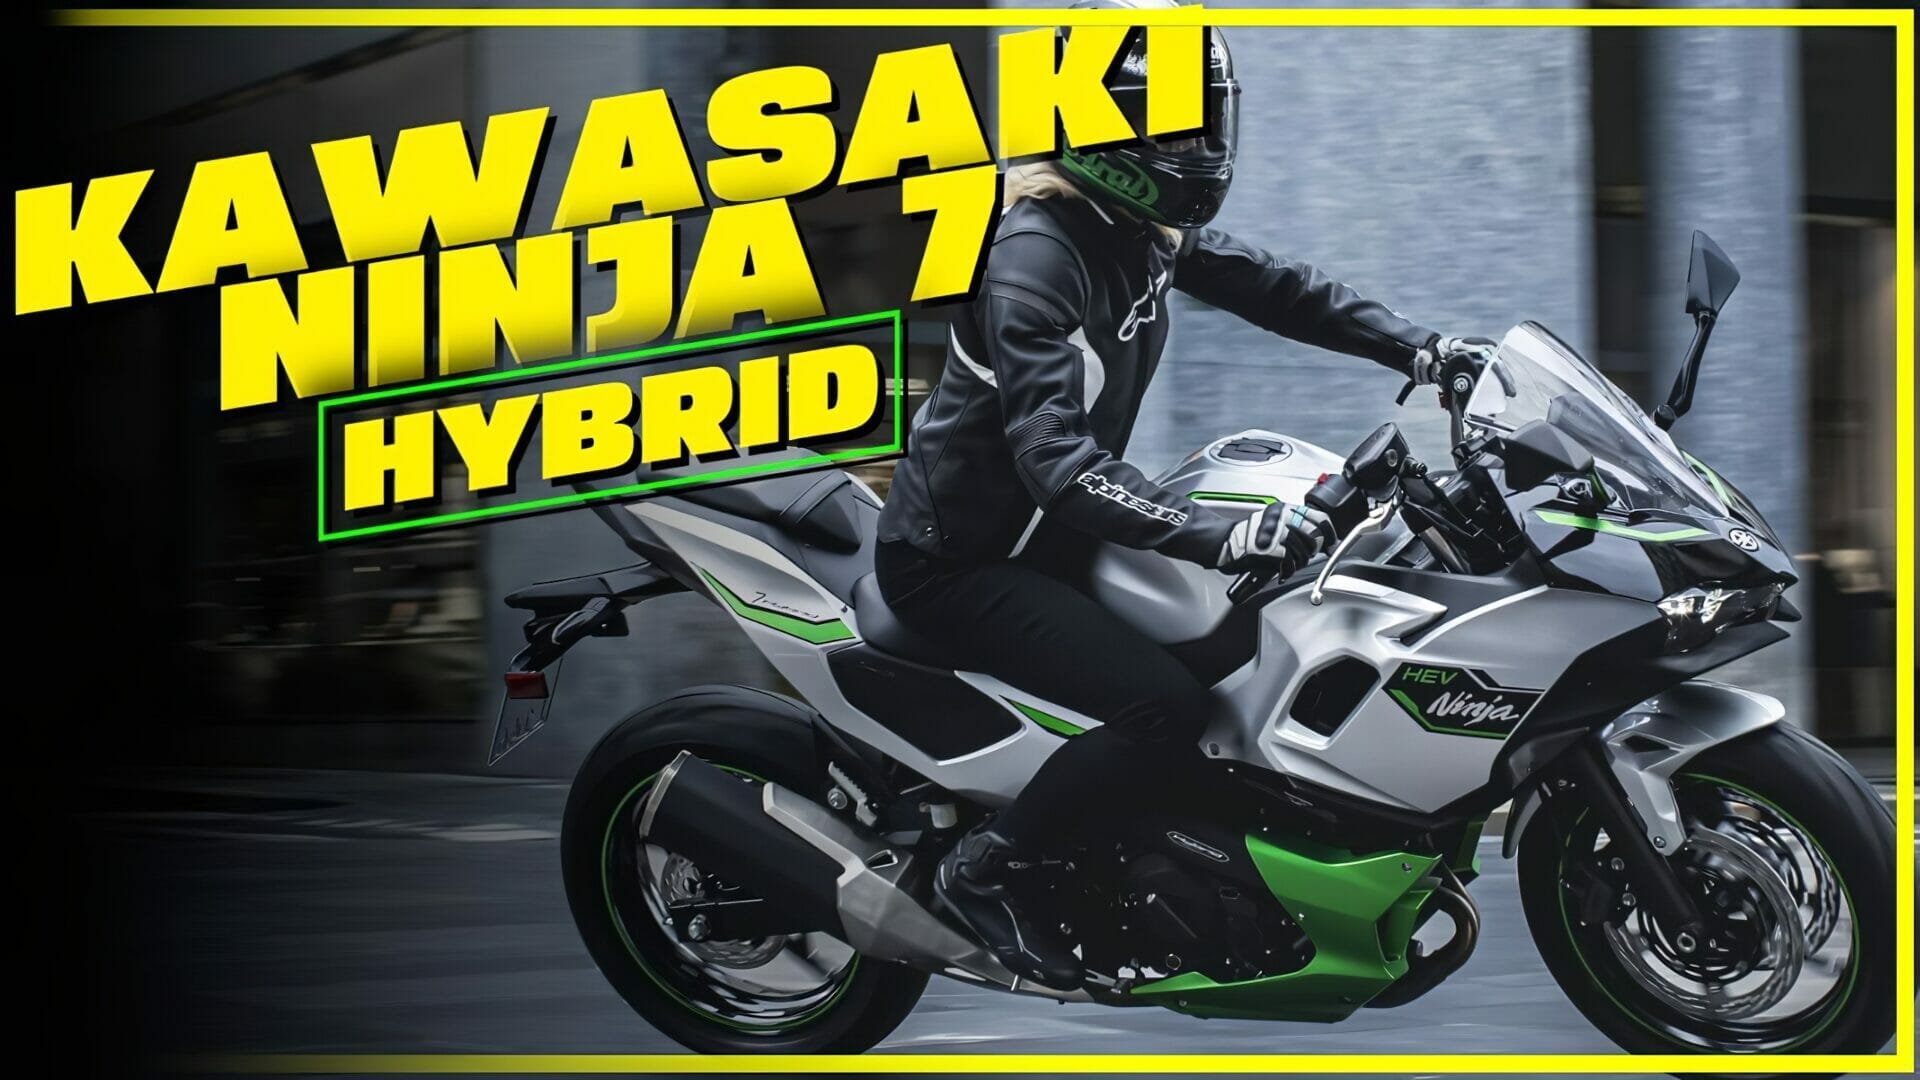 Kawasaki Ninja 7 HEV – A look at the technology behind the first hybrid motorcycle